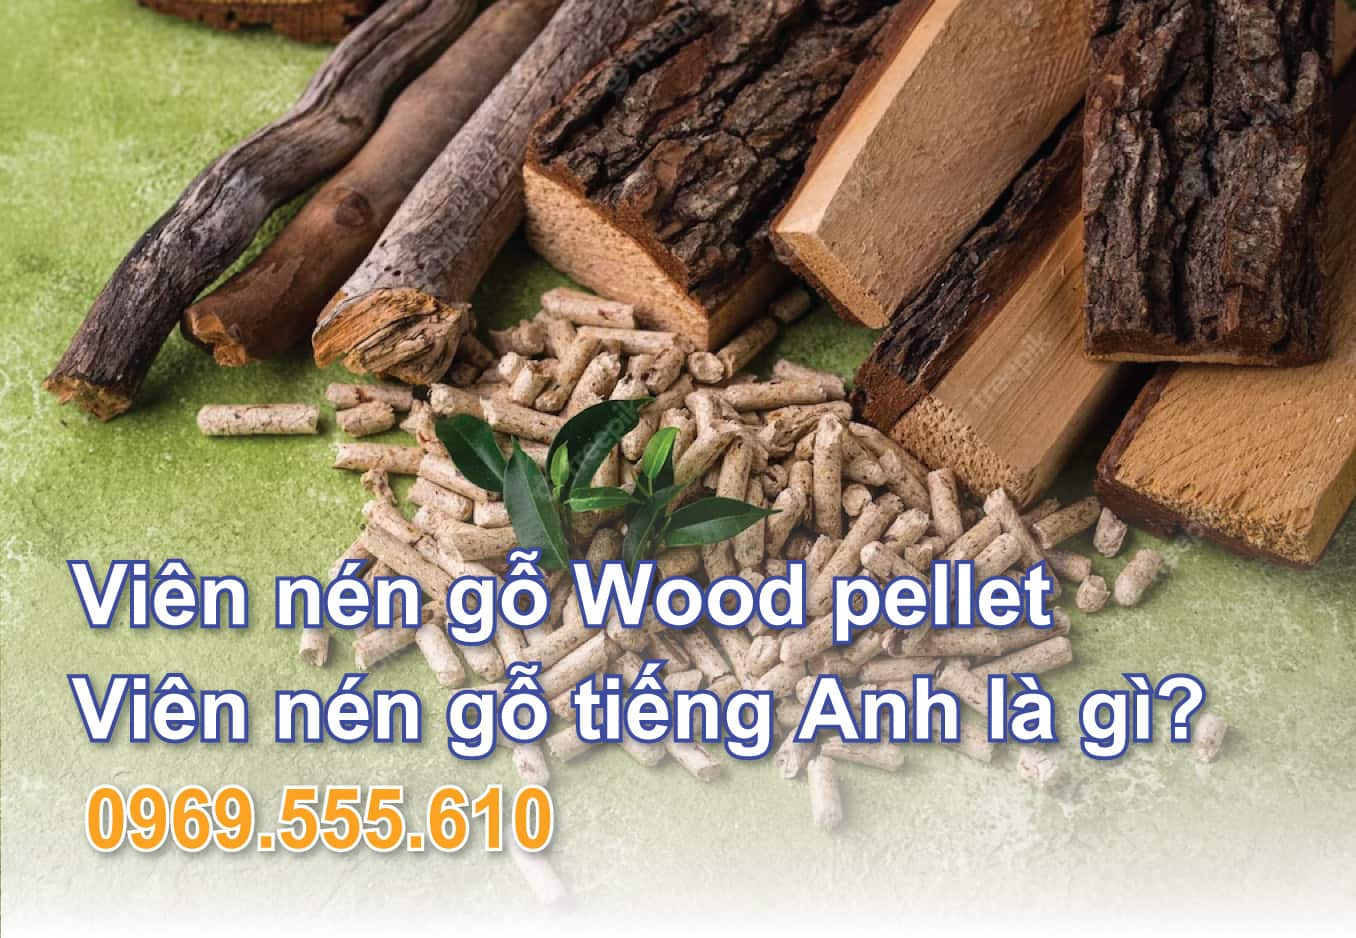 Viên nén gỗ Wood pellet - Viên nén gỗ tiếng Anh là gì